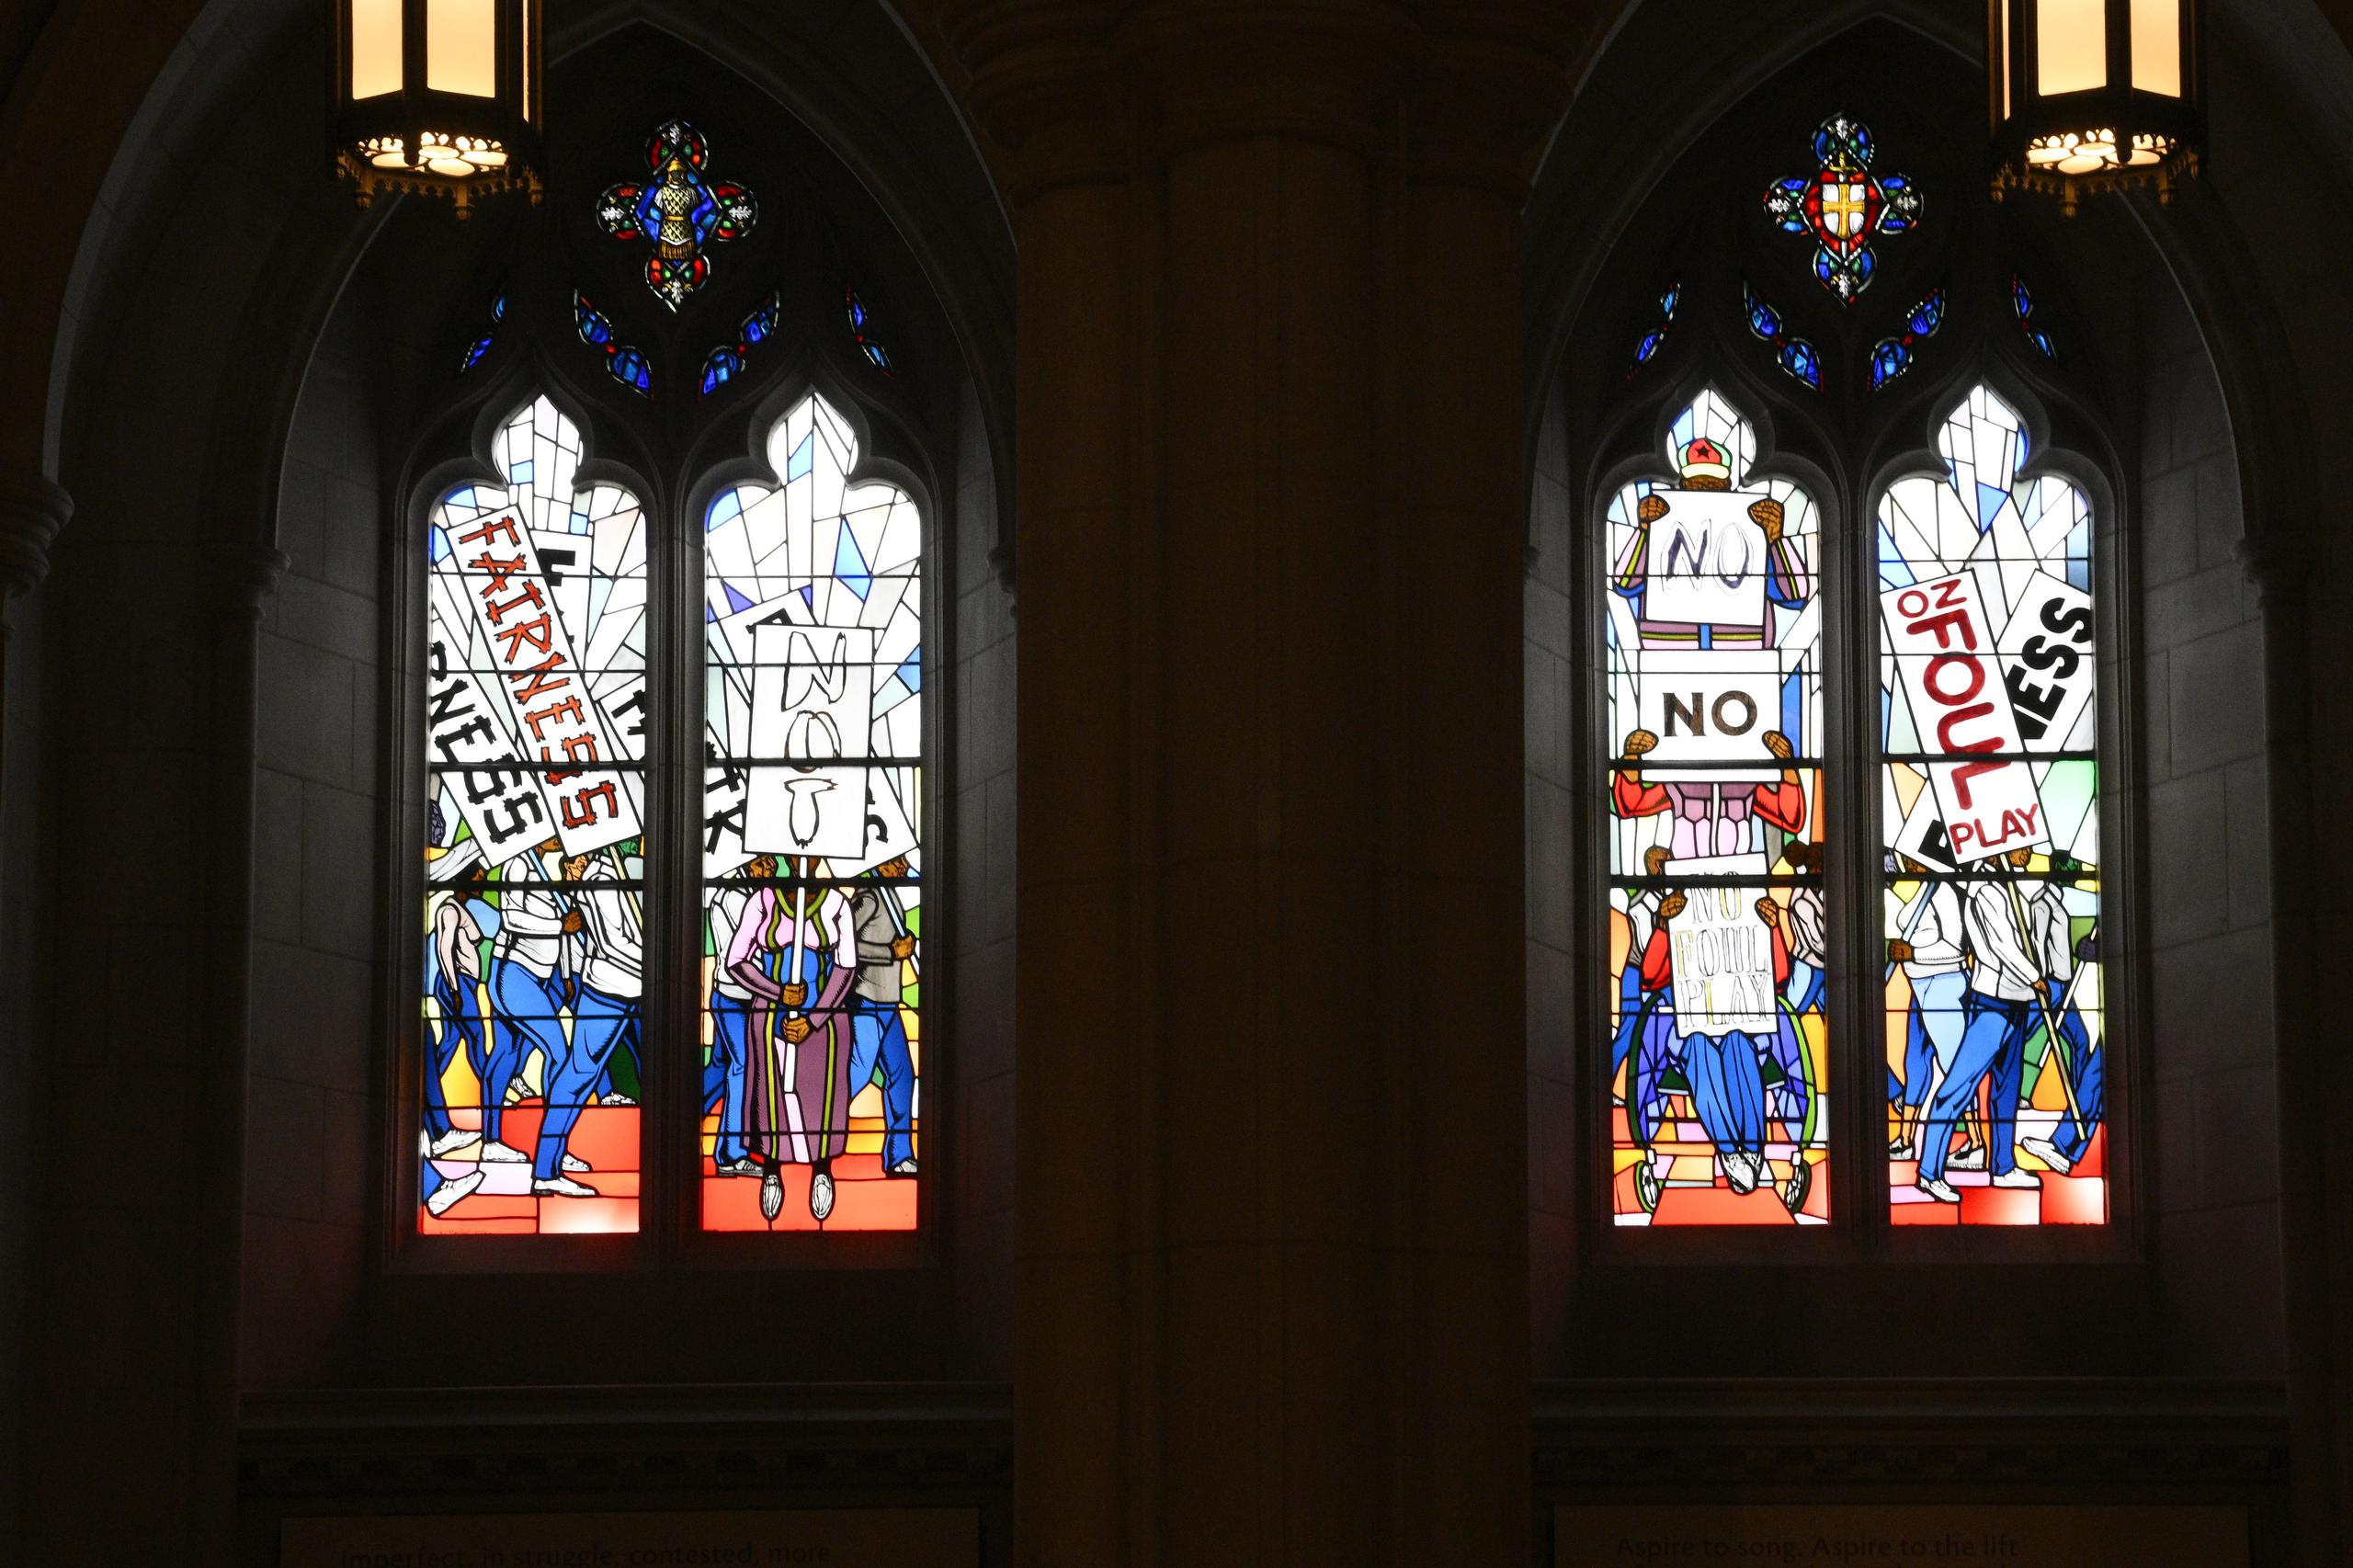 Los nuevos vitrales, intitulados “Ahora y Siempre”, se basan en un diseño del artista Kerry James Marshall. El artesano vidriero Andrew Goldkuhle elaboró los vitrales conforme a ese diseño.